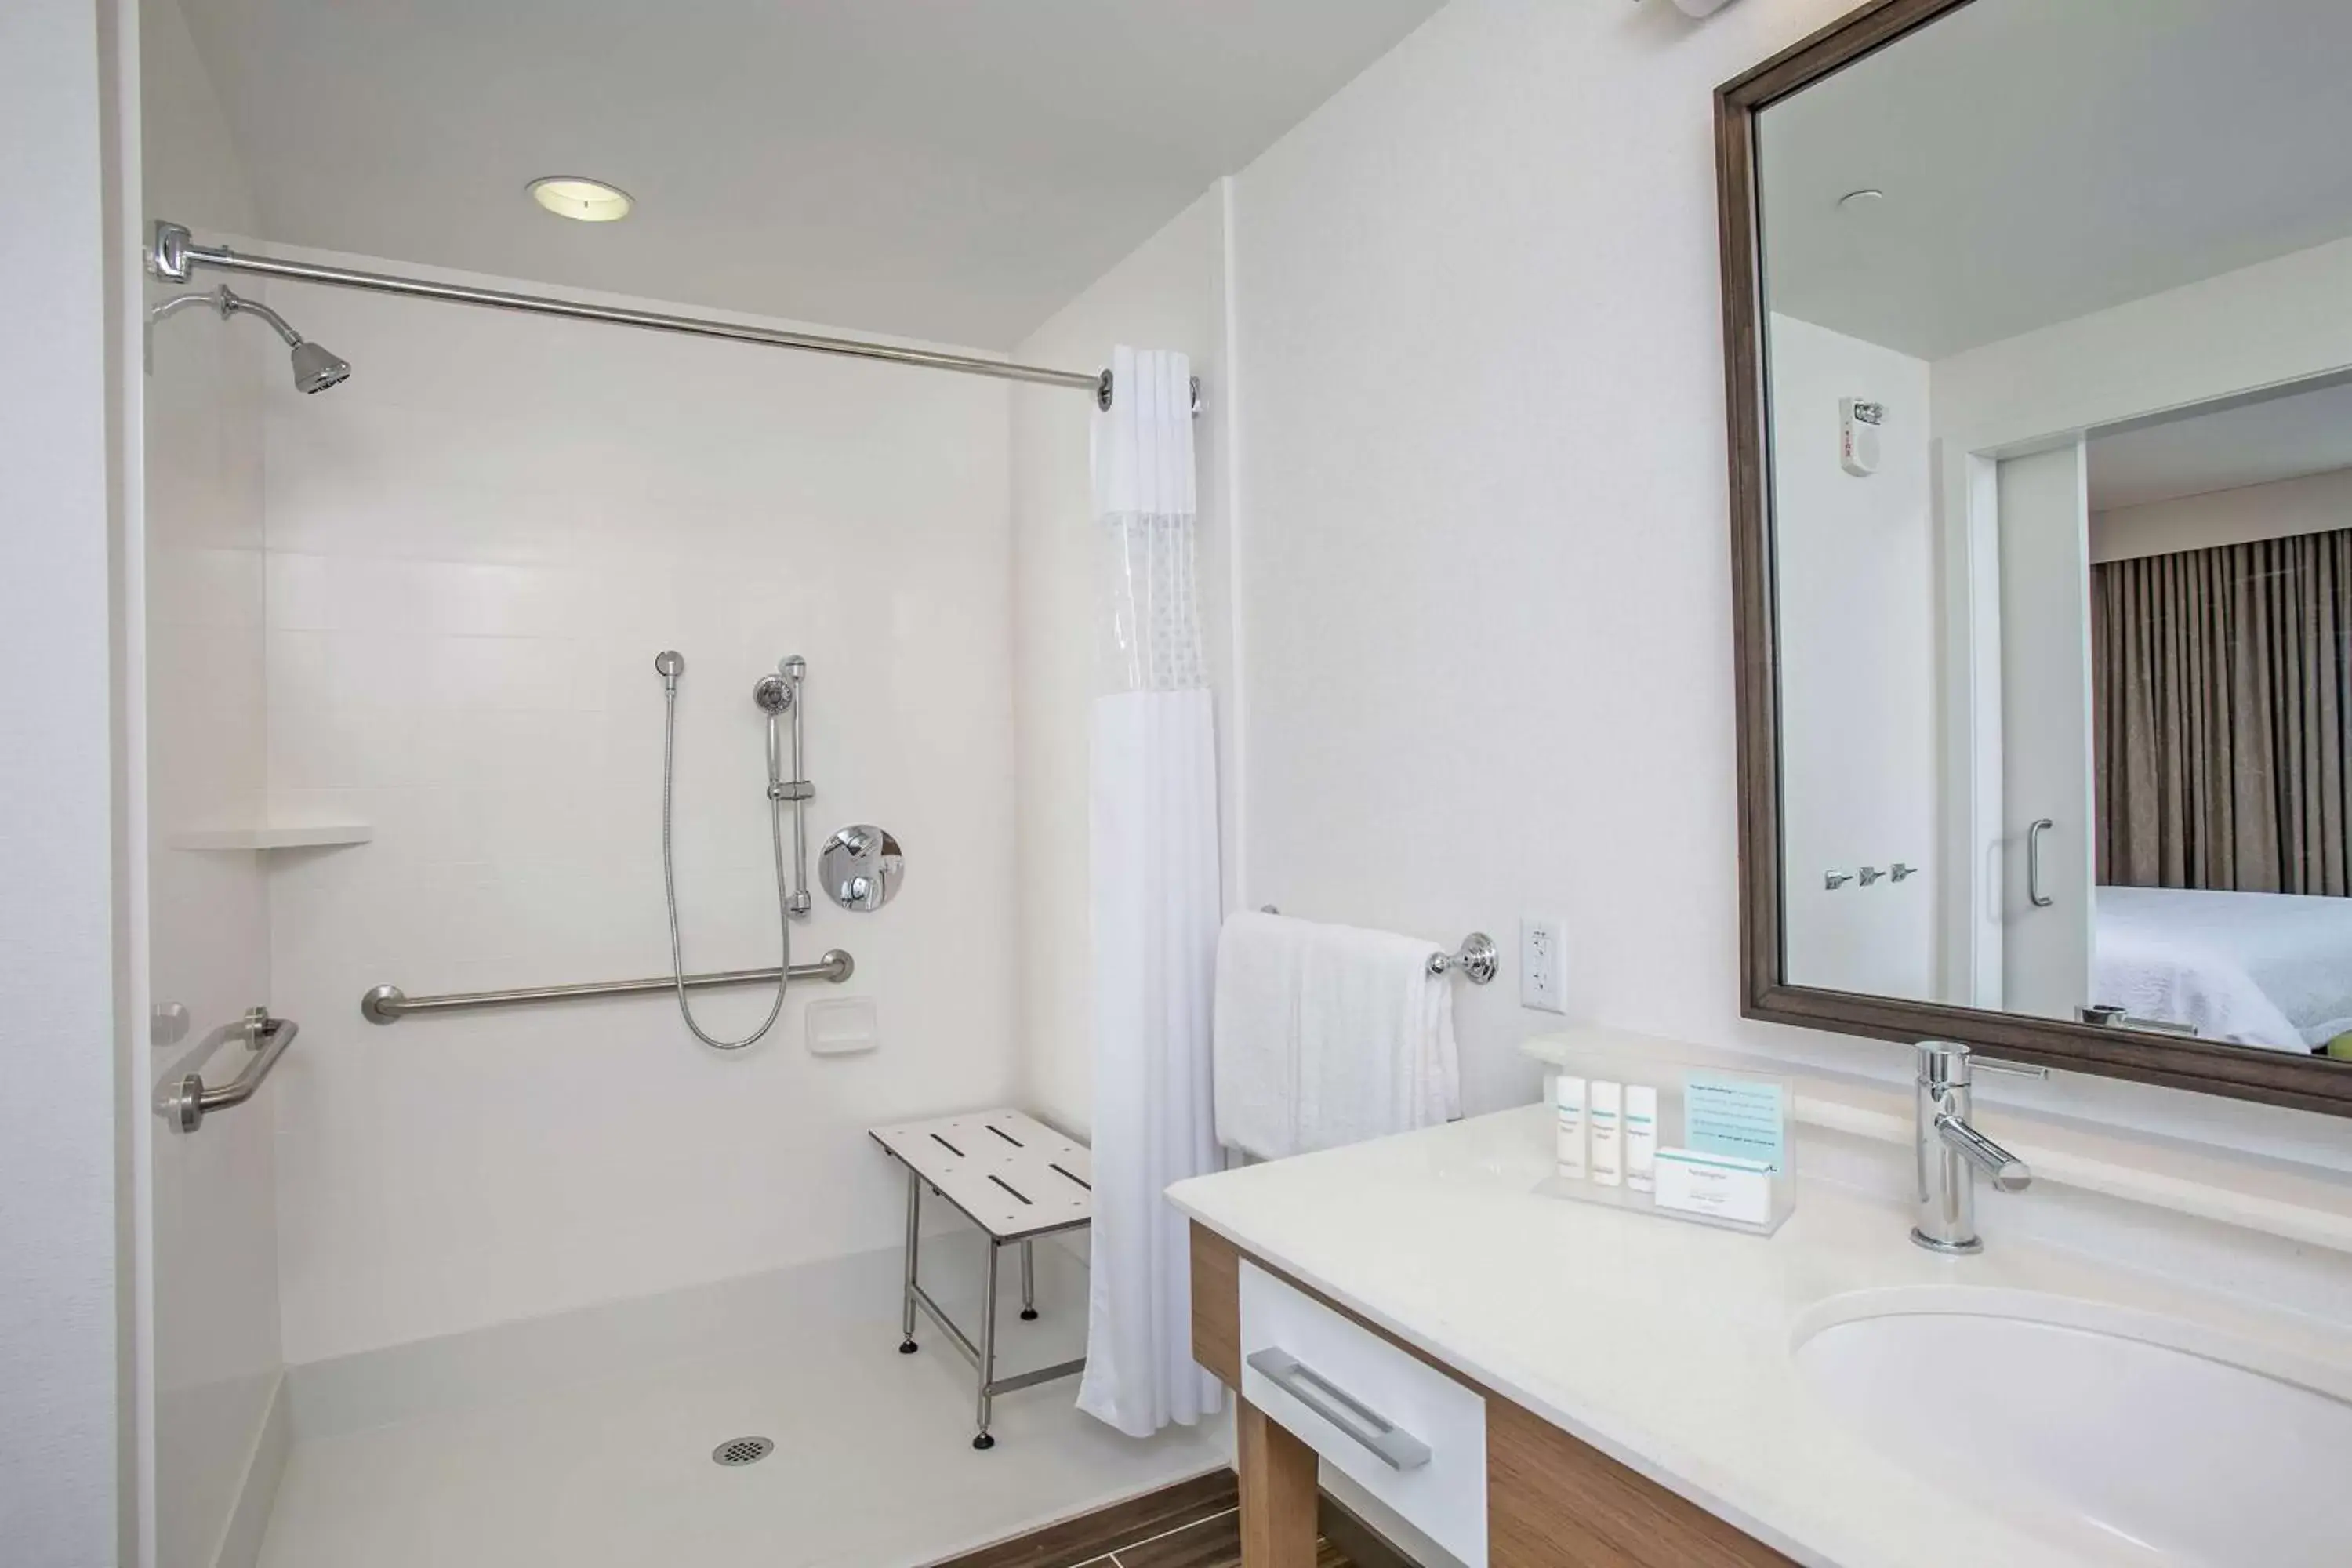 Bathroom in Hampton Inn & Suites Oahu/Kapolei, HI - FREE Breakfast